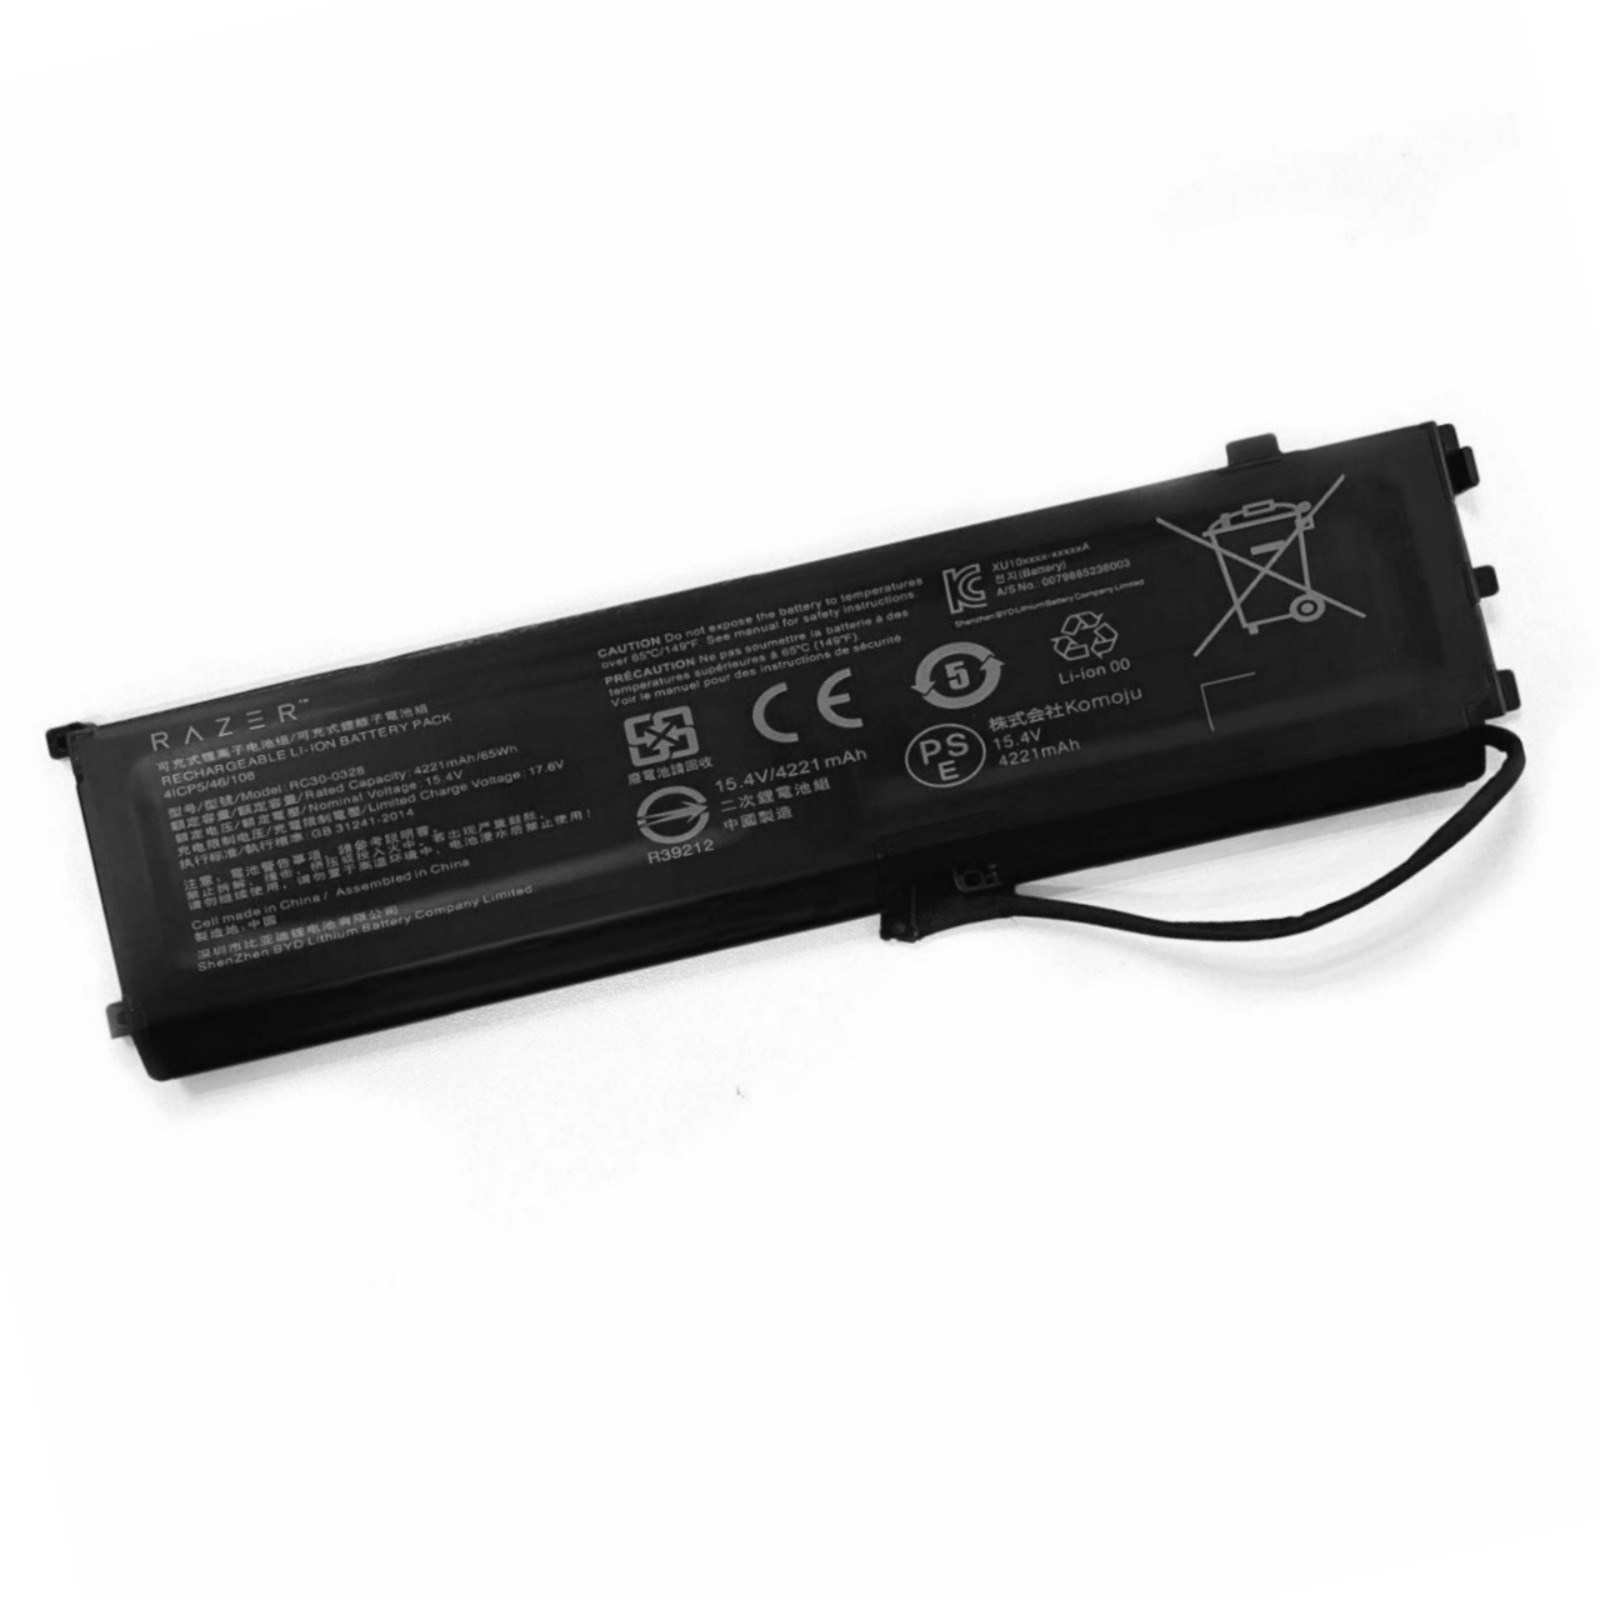 Original RC30-0328 New Battery for Razer Blade 15 2020 2021 RZ09-0330x RZ09-0328